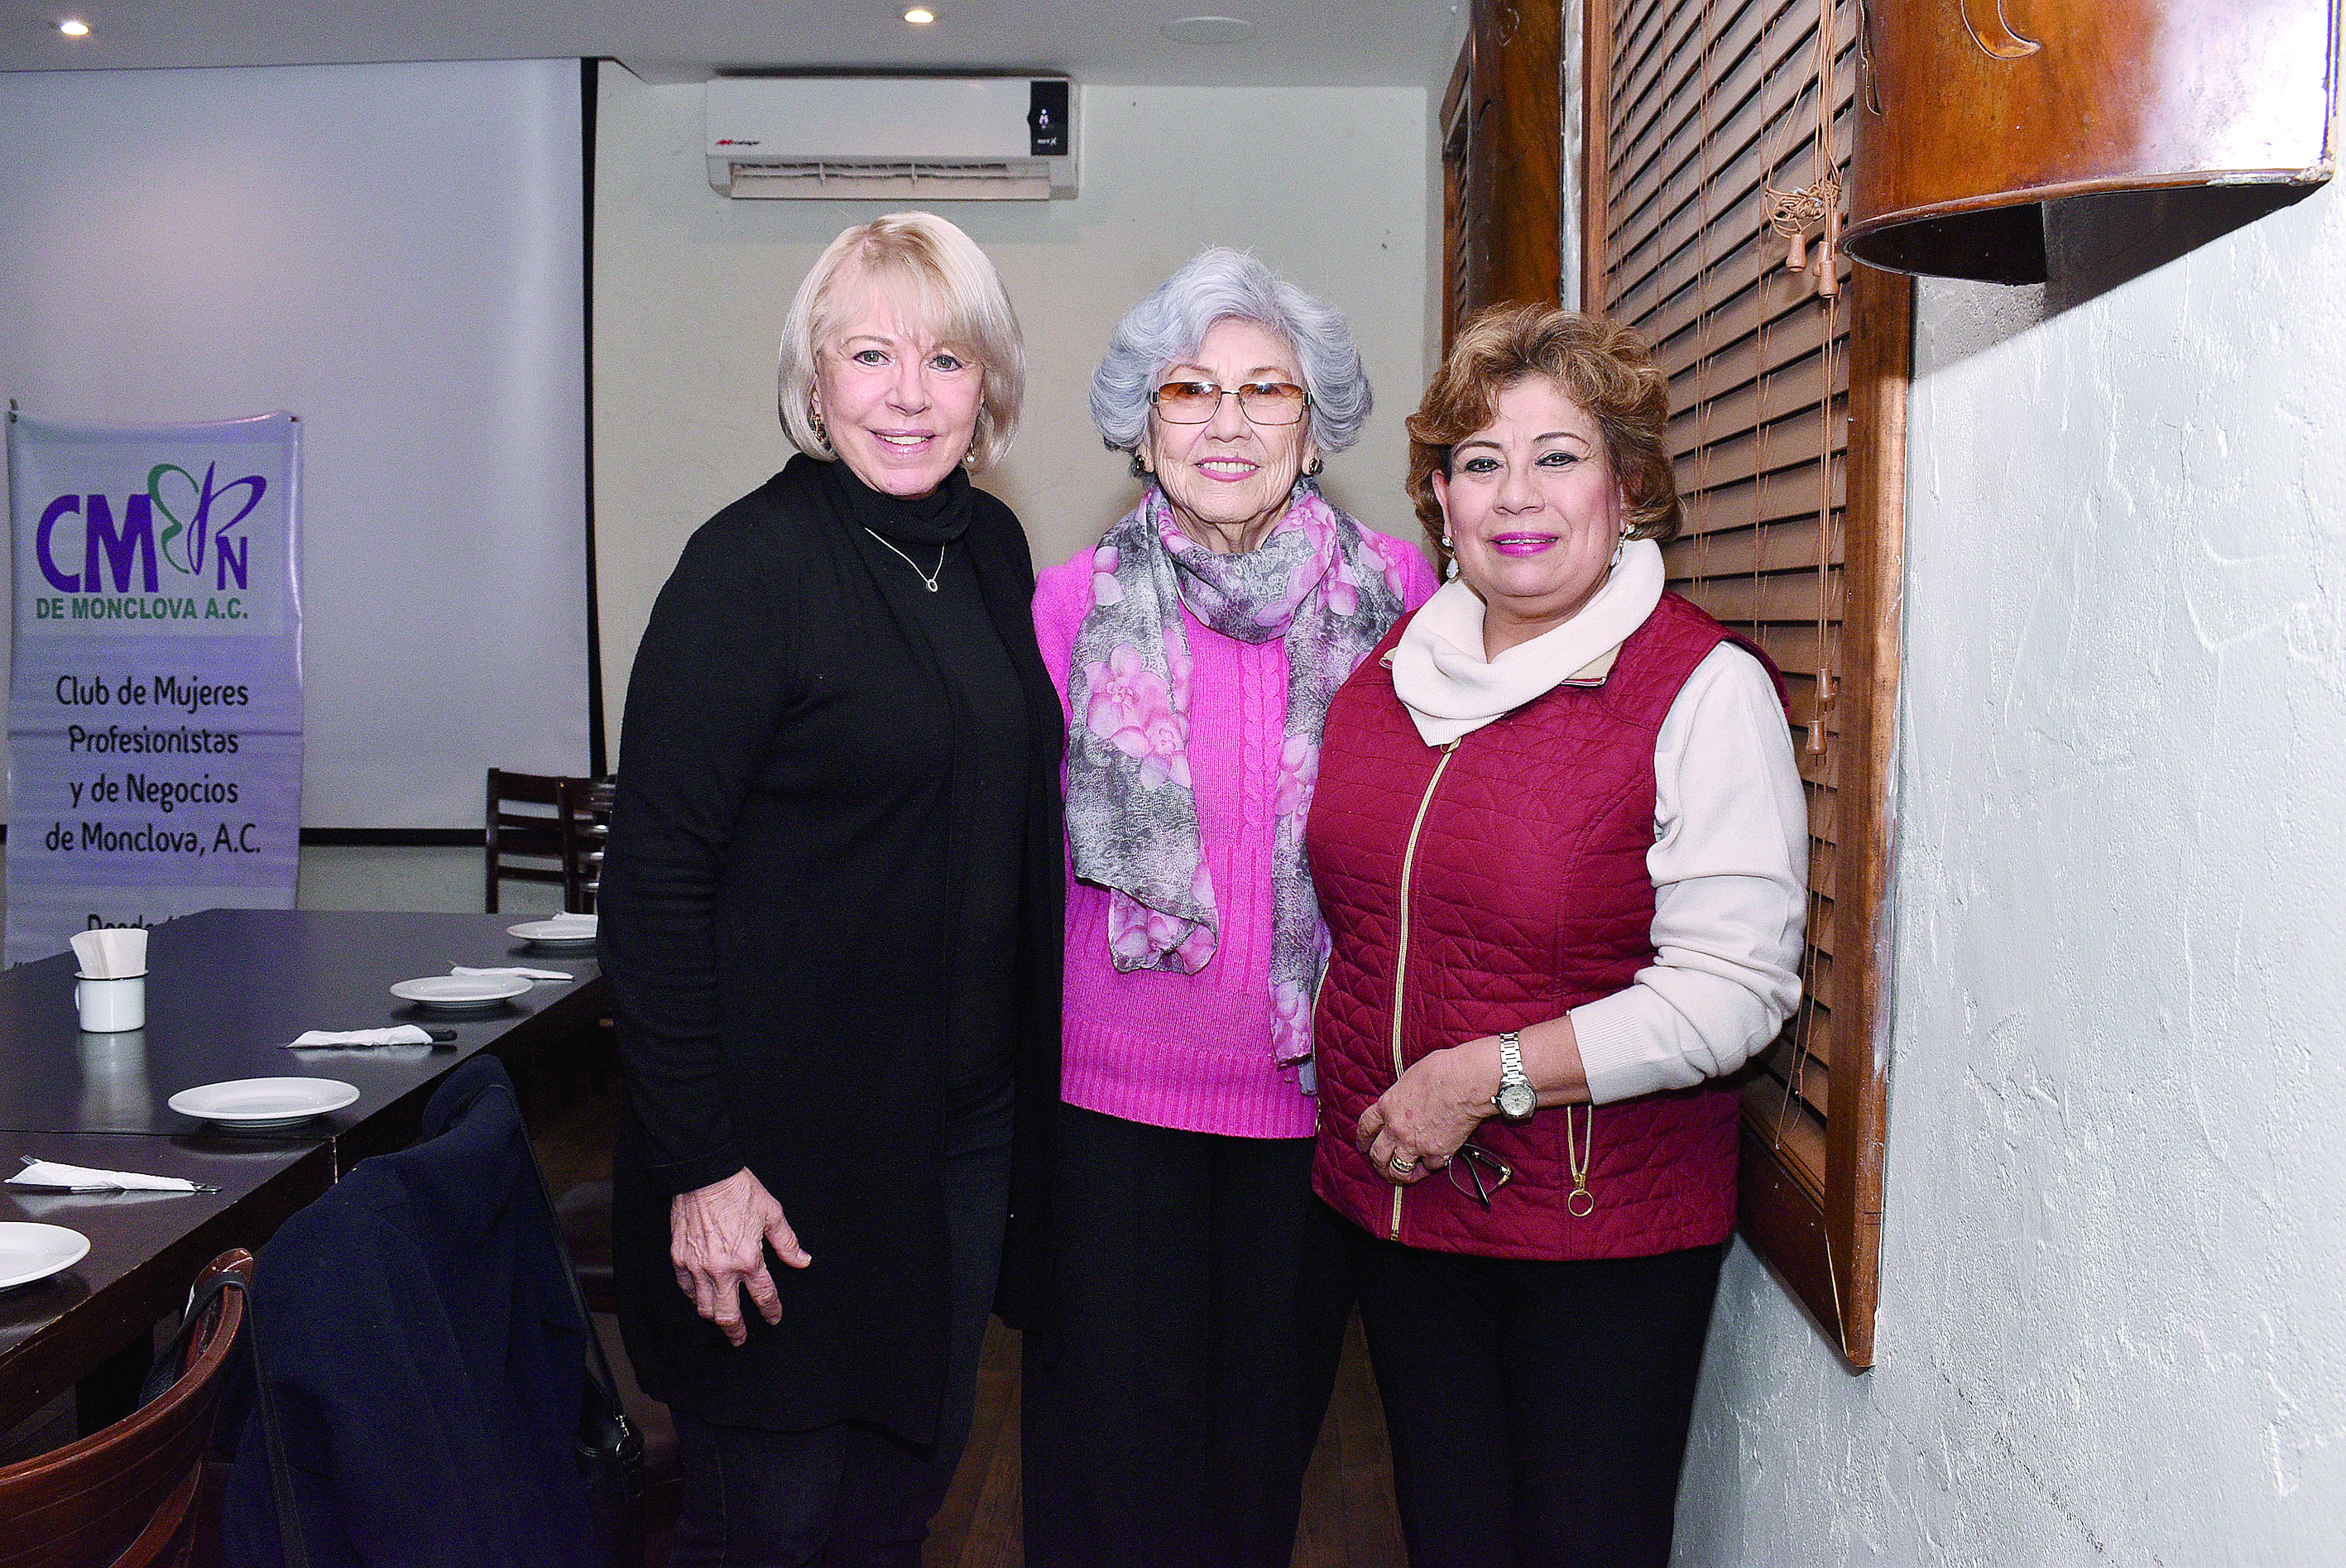 Club de Mujeres Profesionistas y de Negocios A.C.